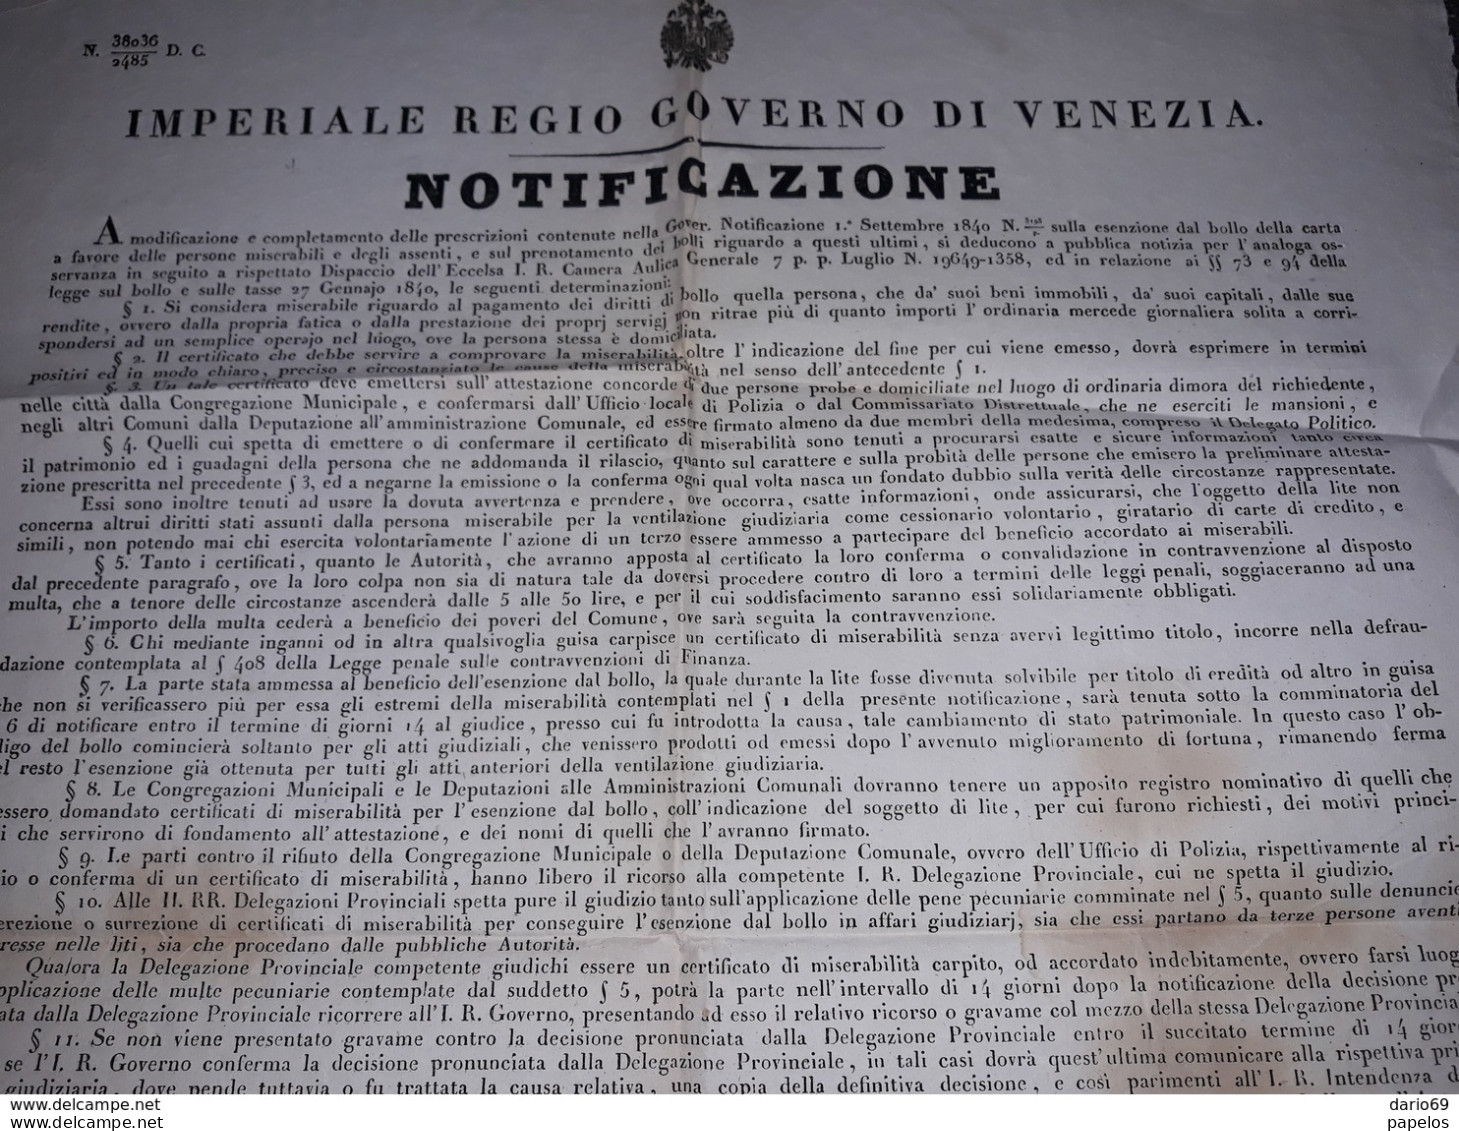 1846 MANIFESTO VENEZIA  IMPERIALE REGGIO  GOVERNO DI VENEZIA - Documents Historiques